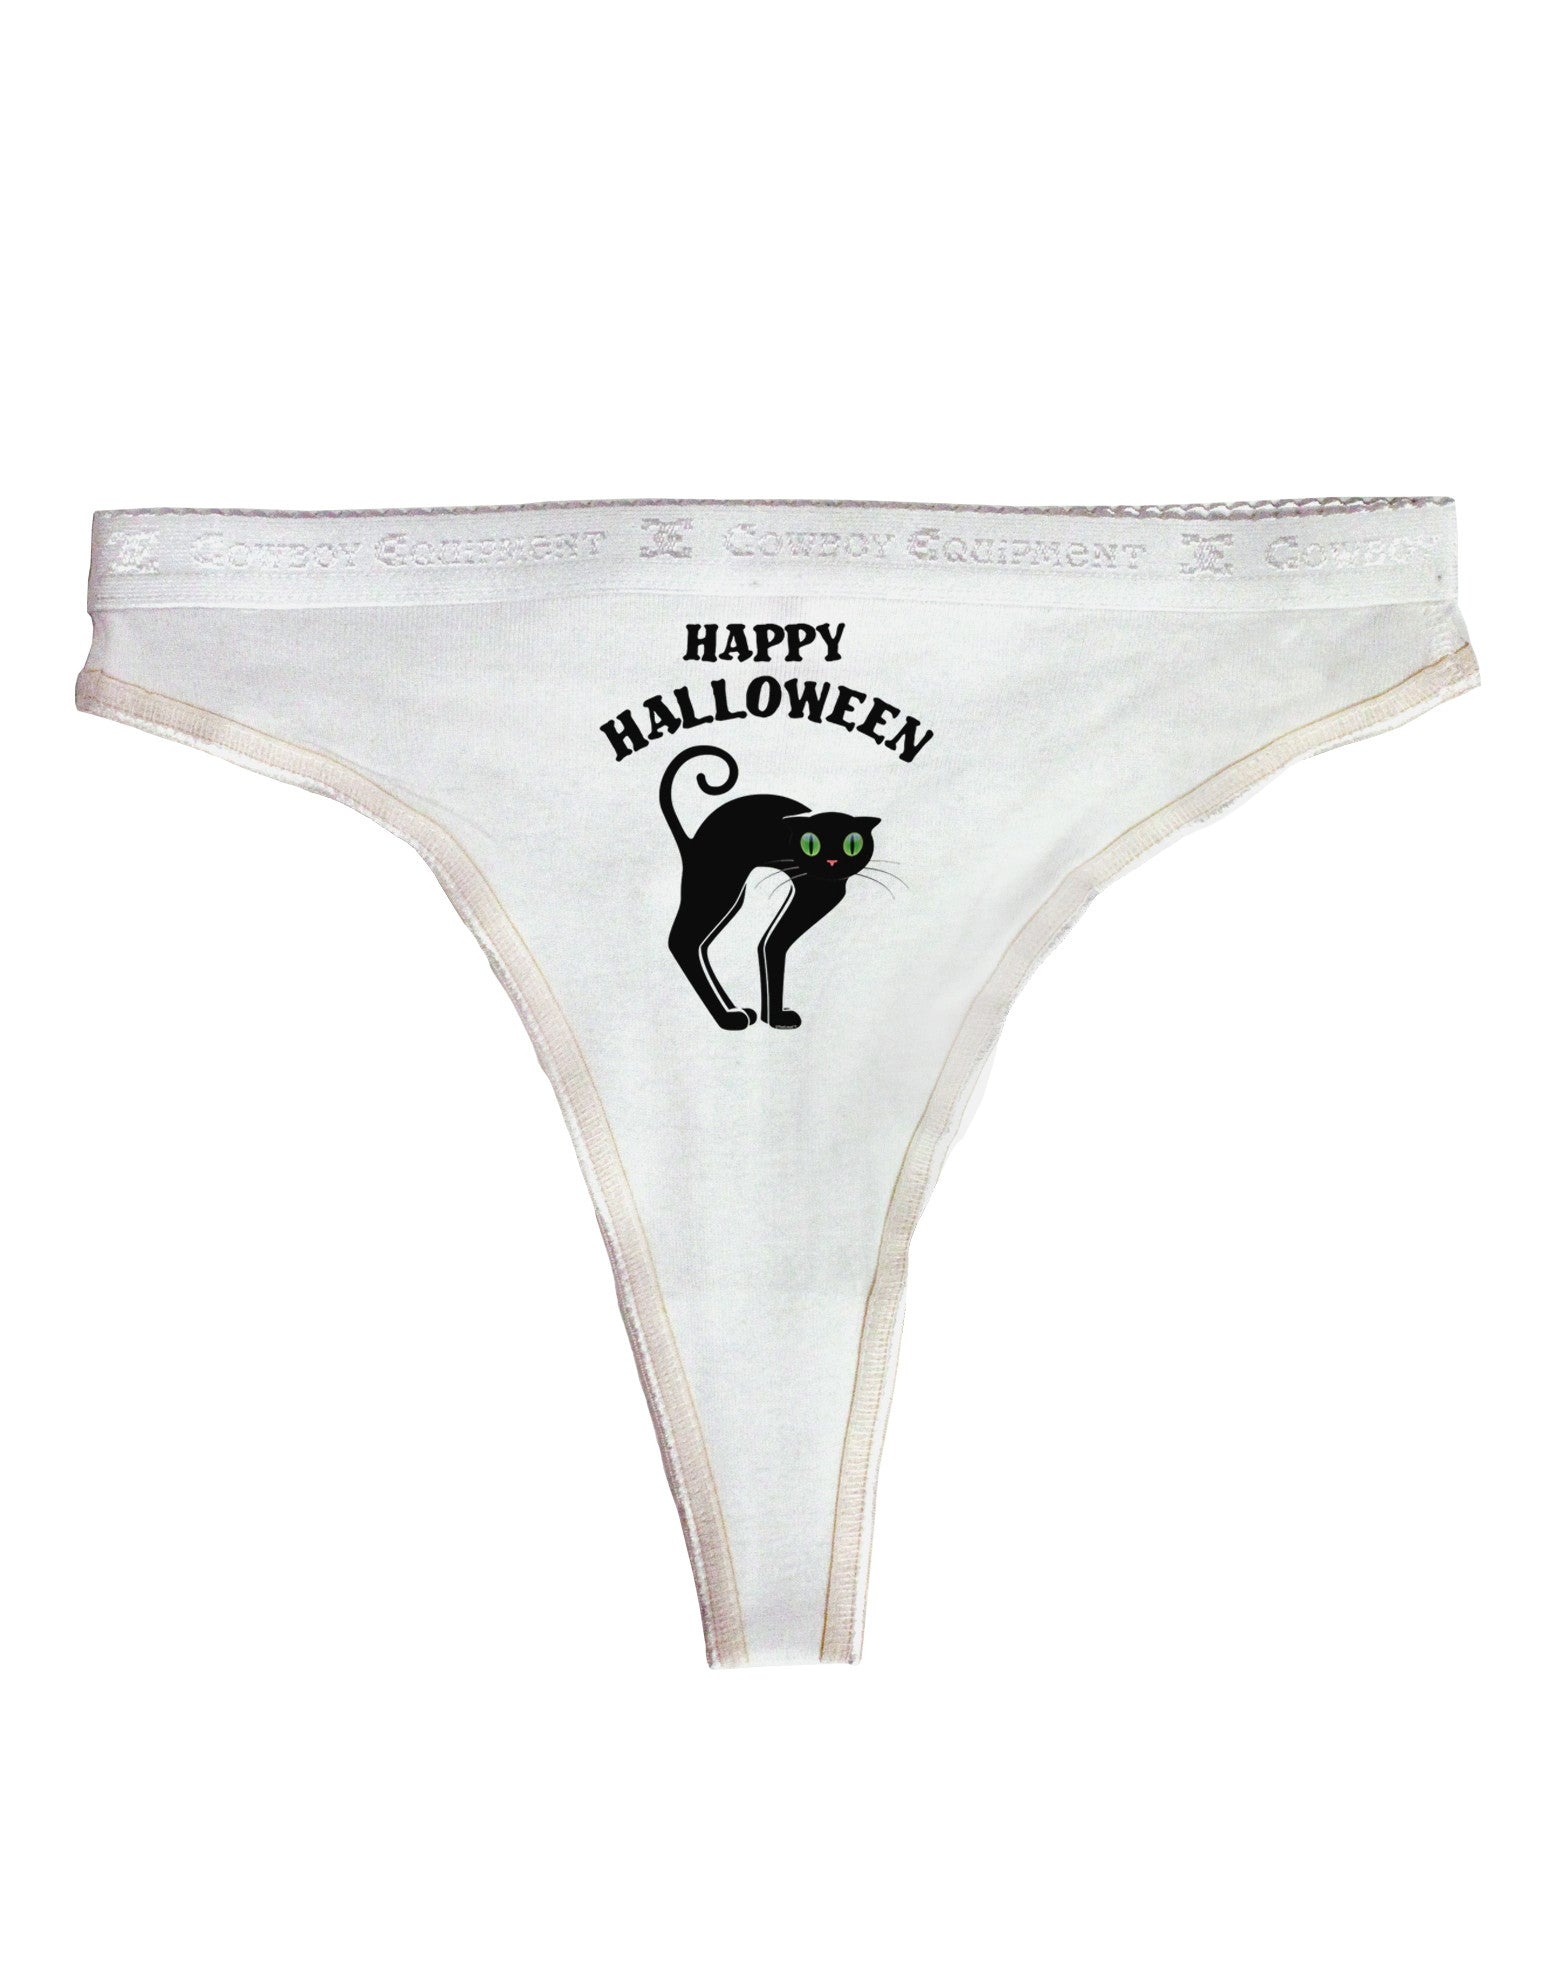 Halloween Underwear 